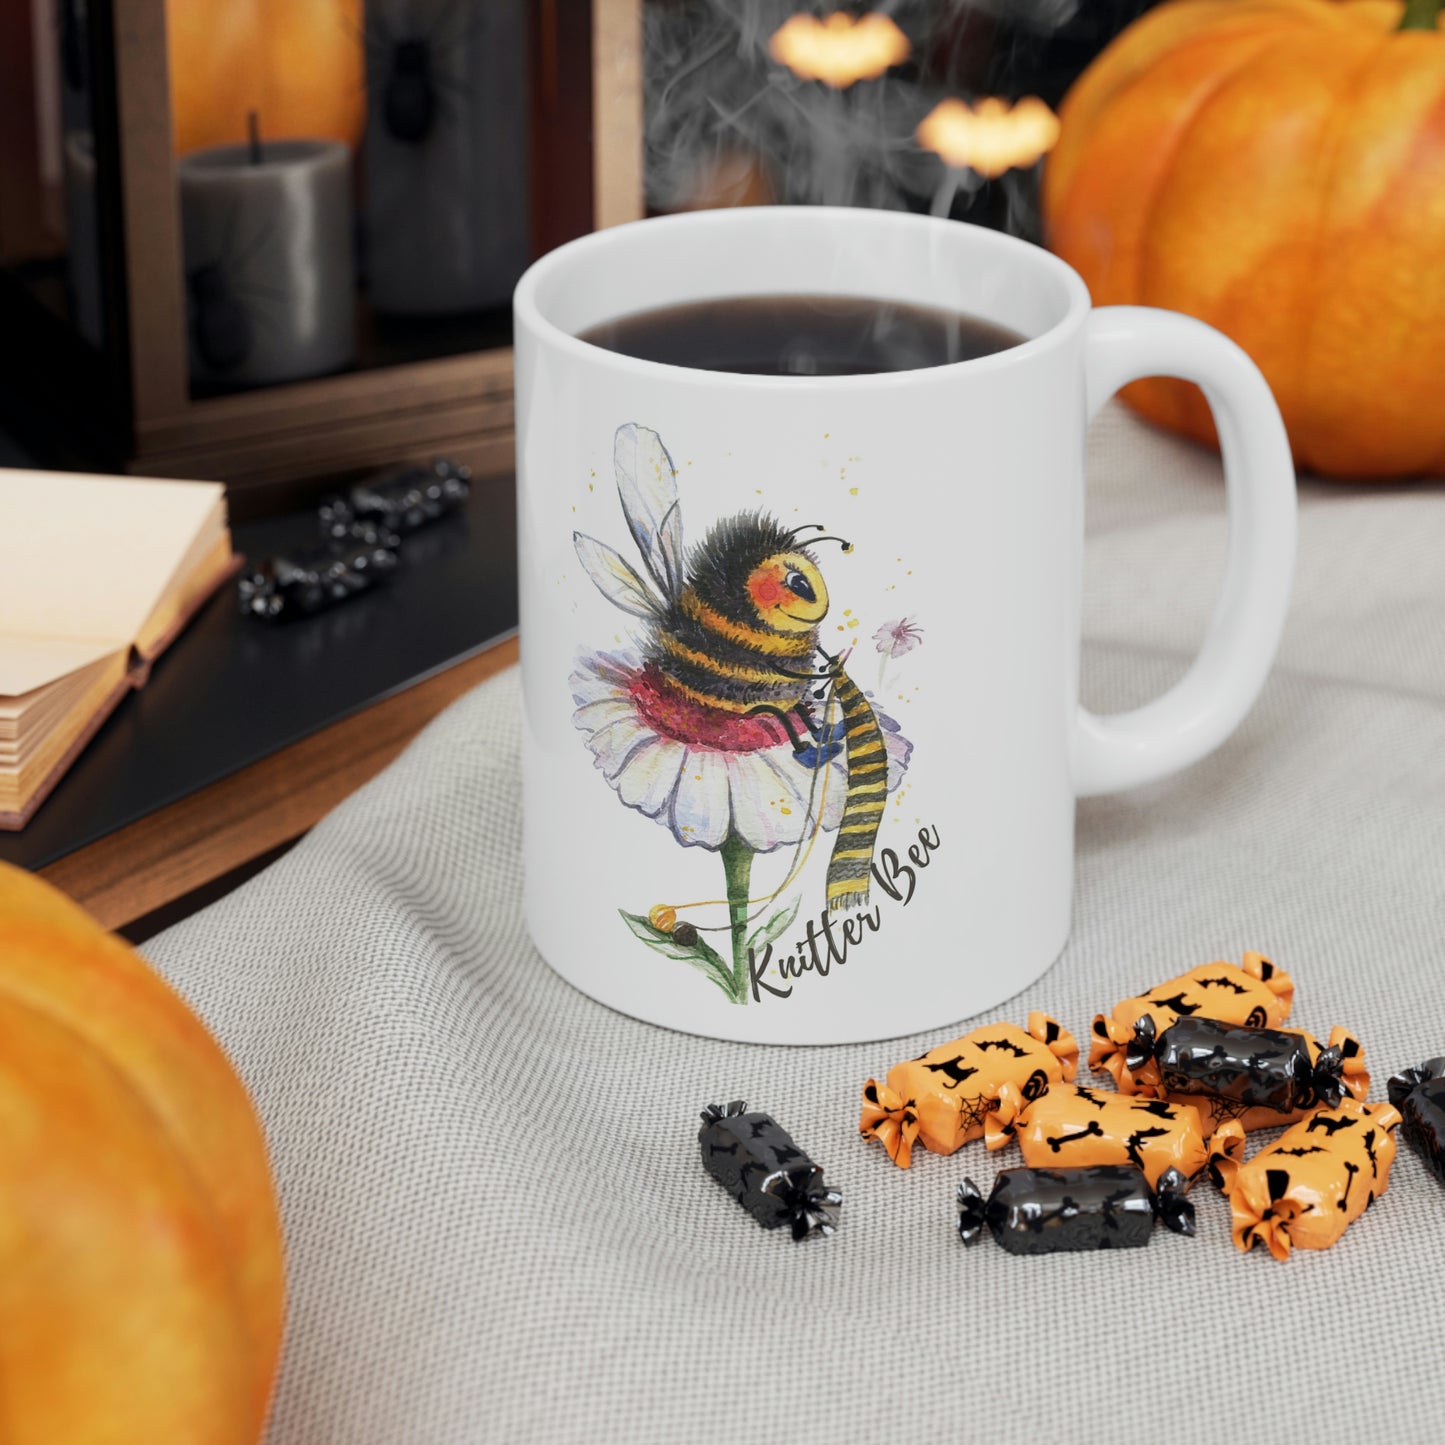 Knitter Bee Coffee Mug